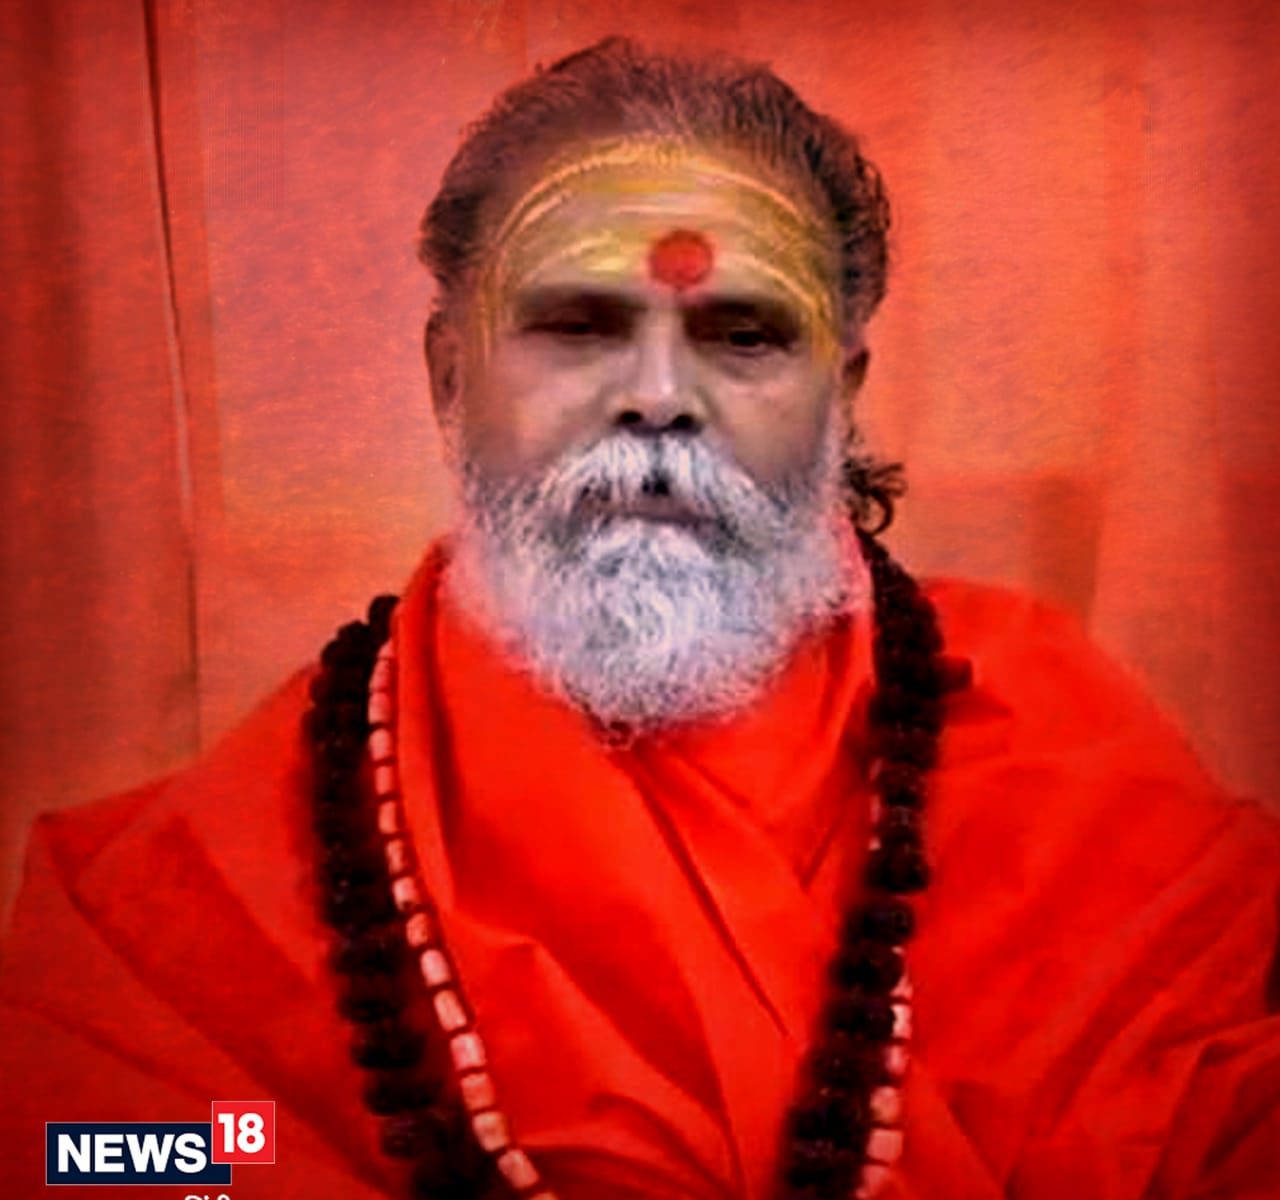 Prayagraj News: प्रयागराज में 20 सितंबर को महंत नरेंद्र गिरि अपने बाघंबरी मठ में मृत पाए गए थे. (File photo)